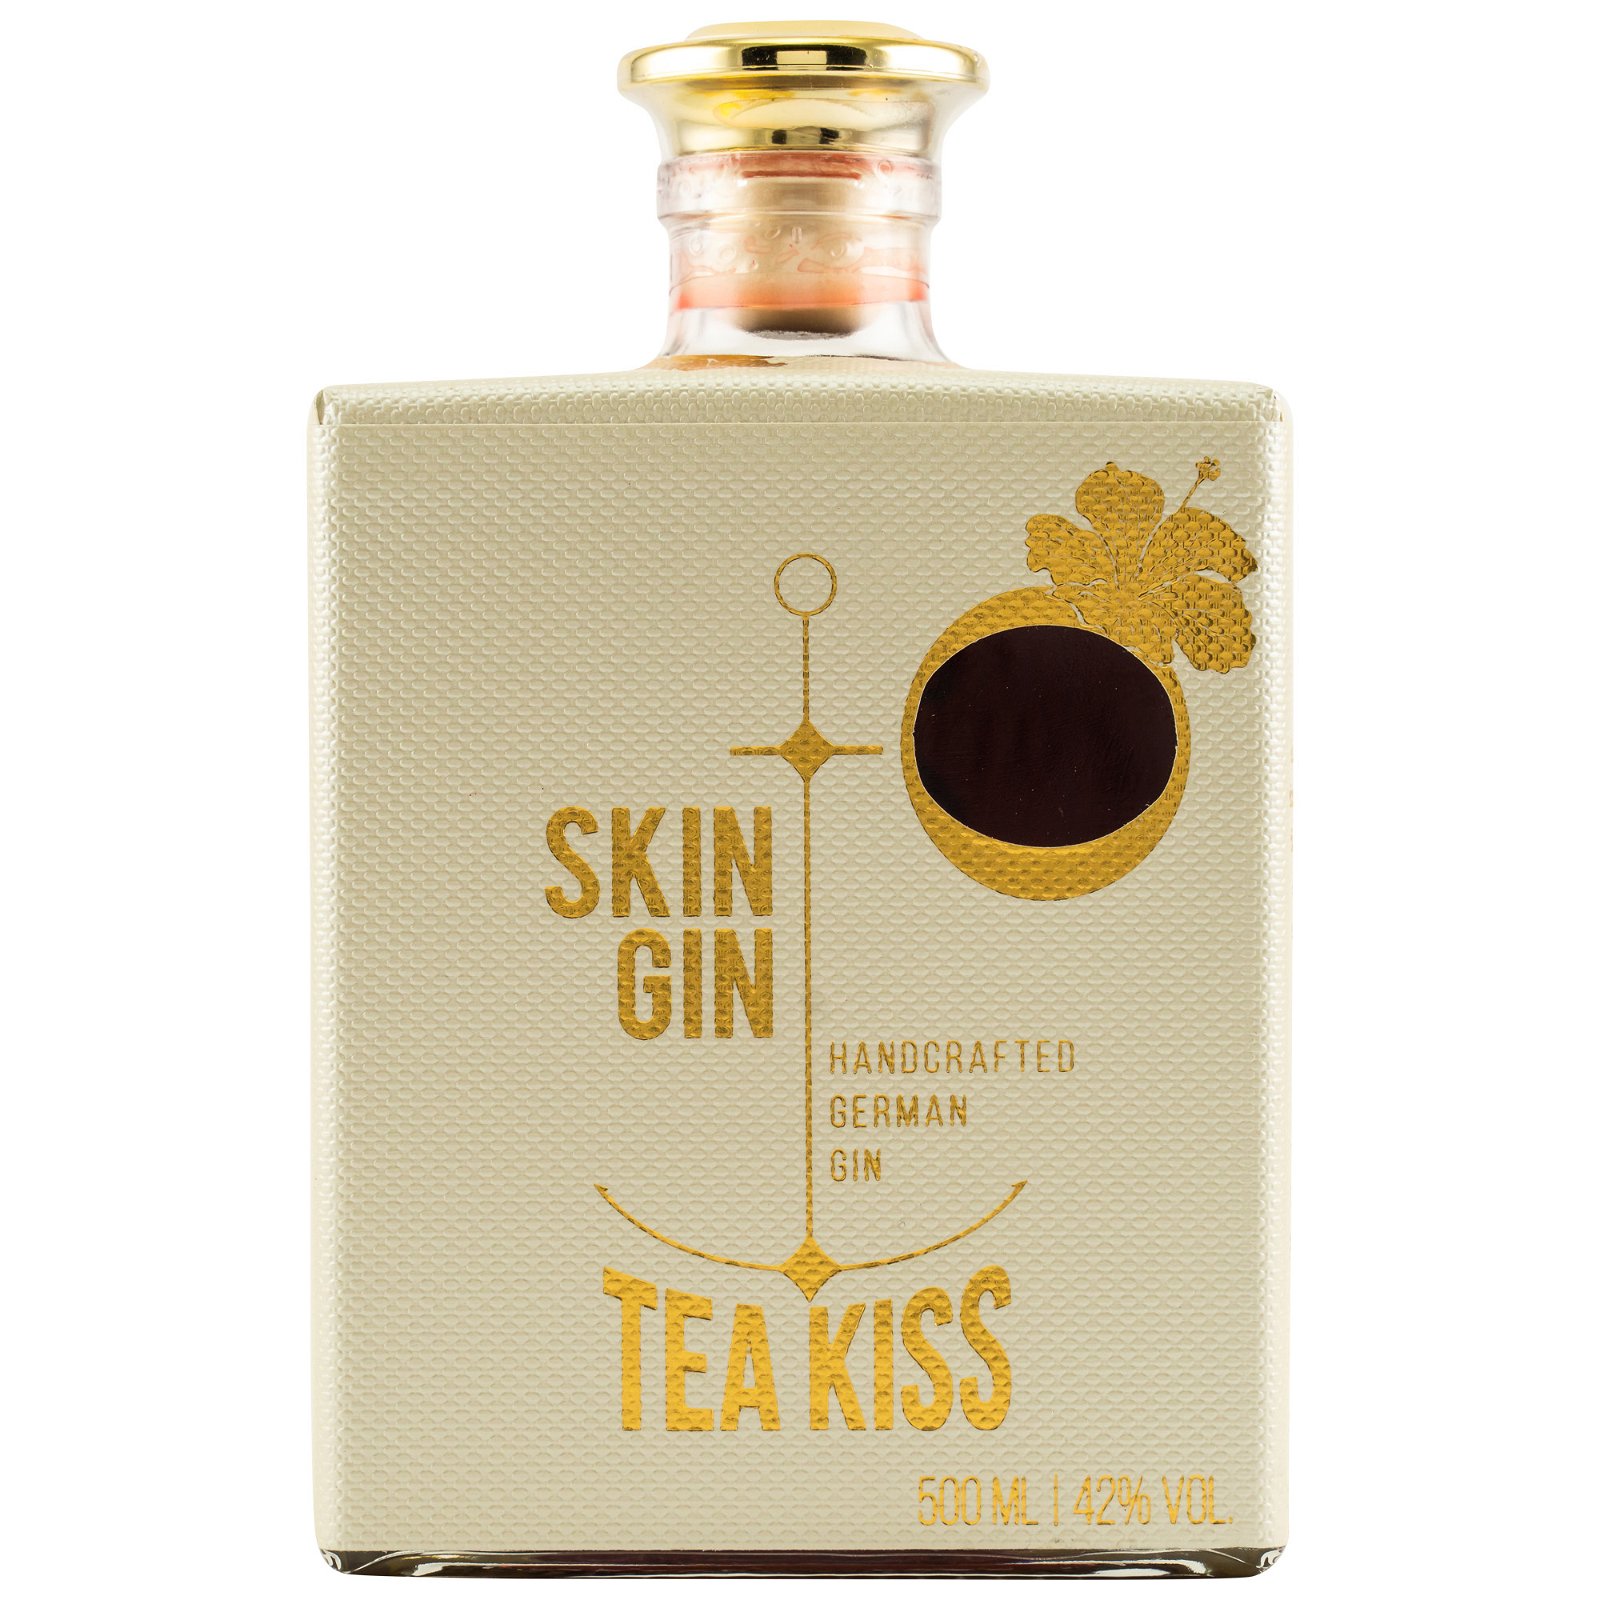 Skin Gin Tea Kiss Edition